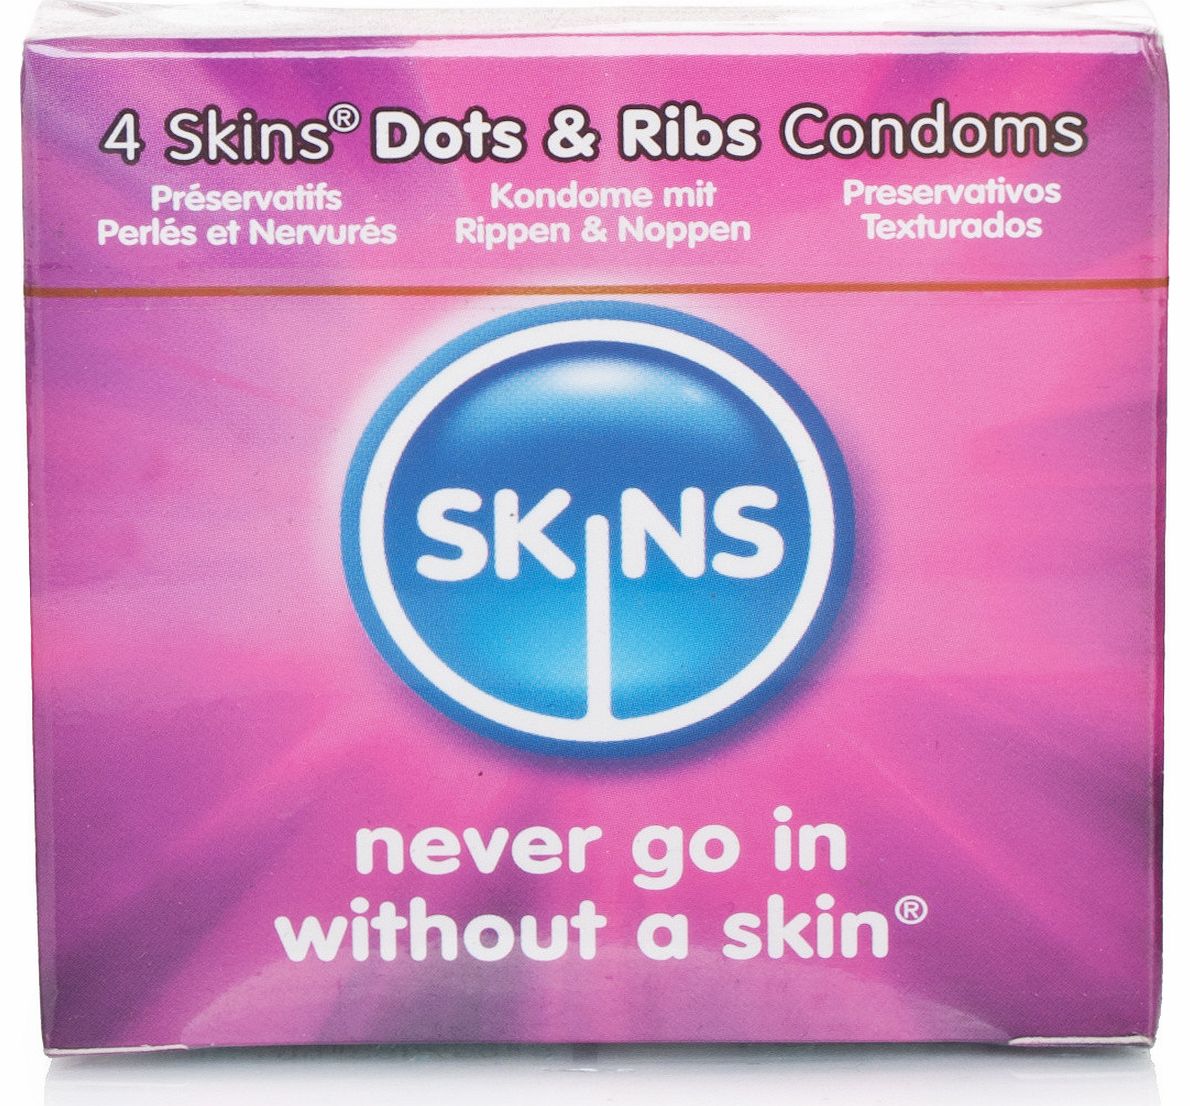 Dots & Ribs Condoms